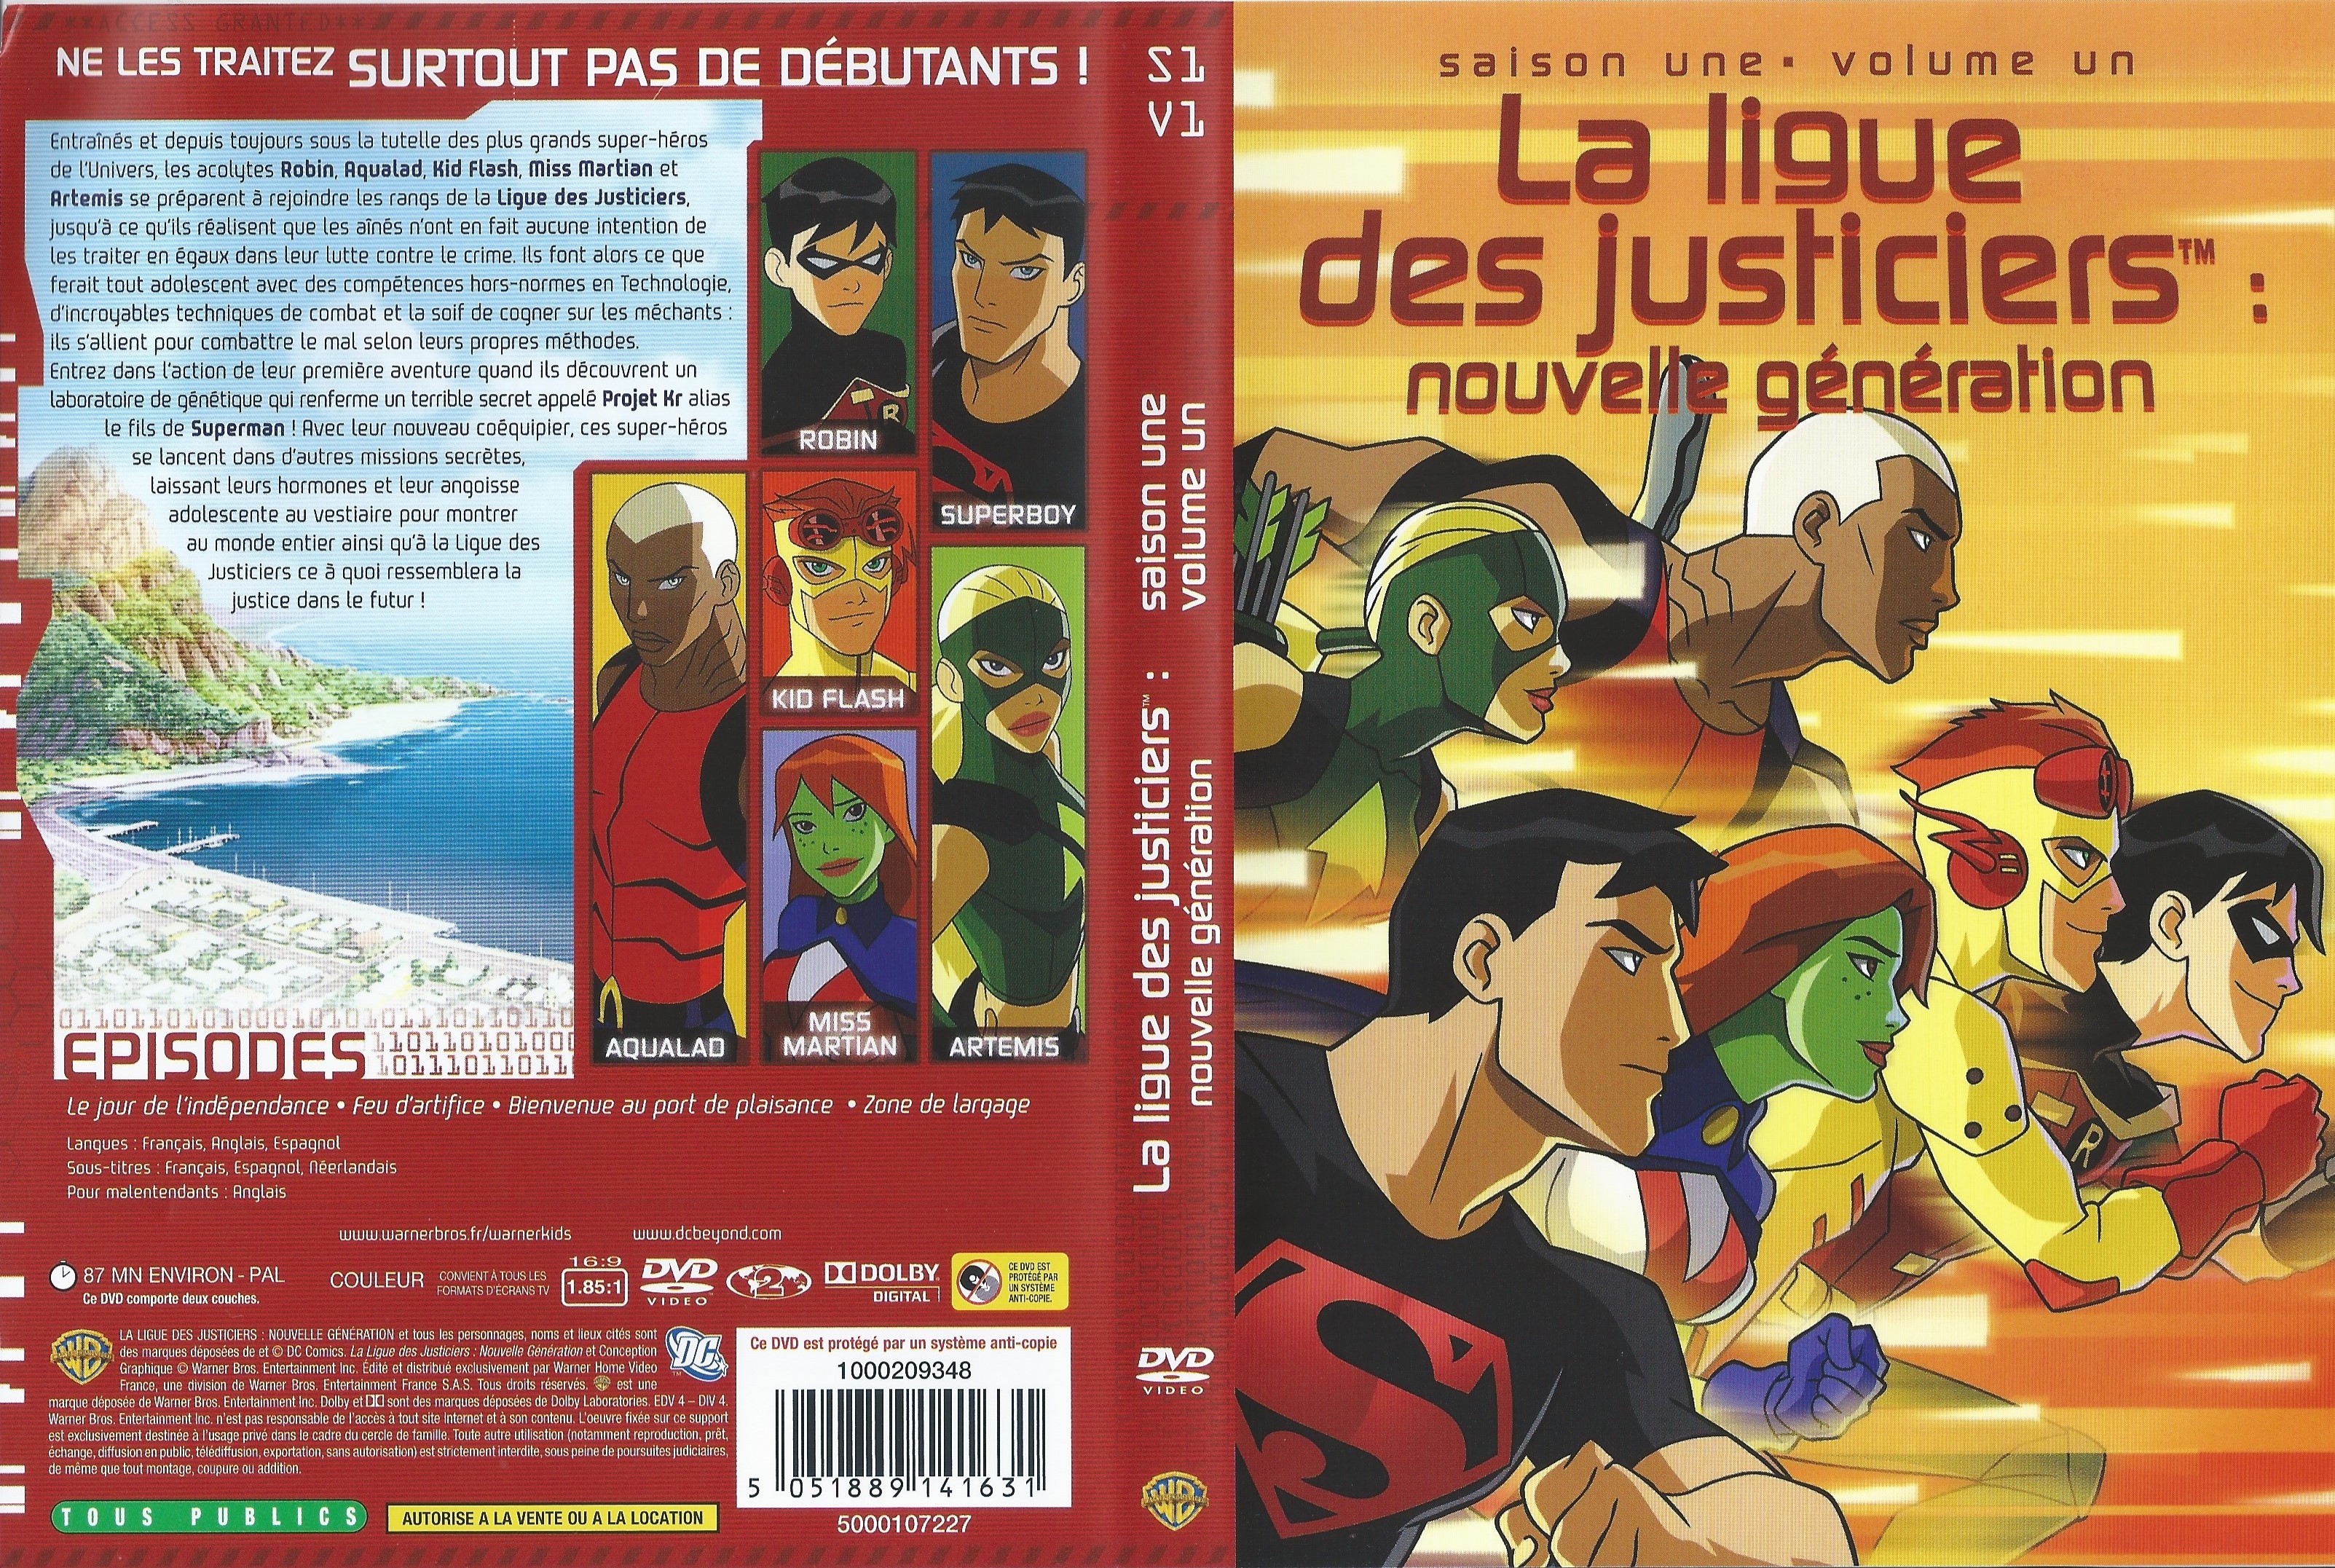 Jaquette DVD La ligue des justiciers nouvelle generation Saison 1 Vol 01